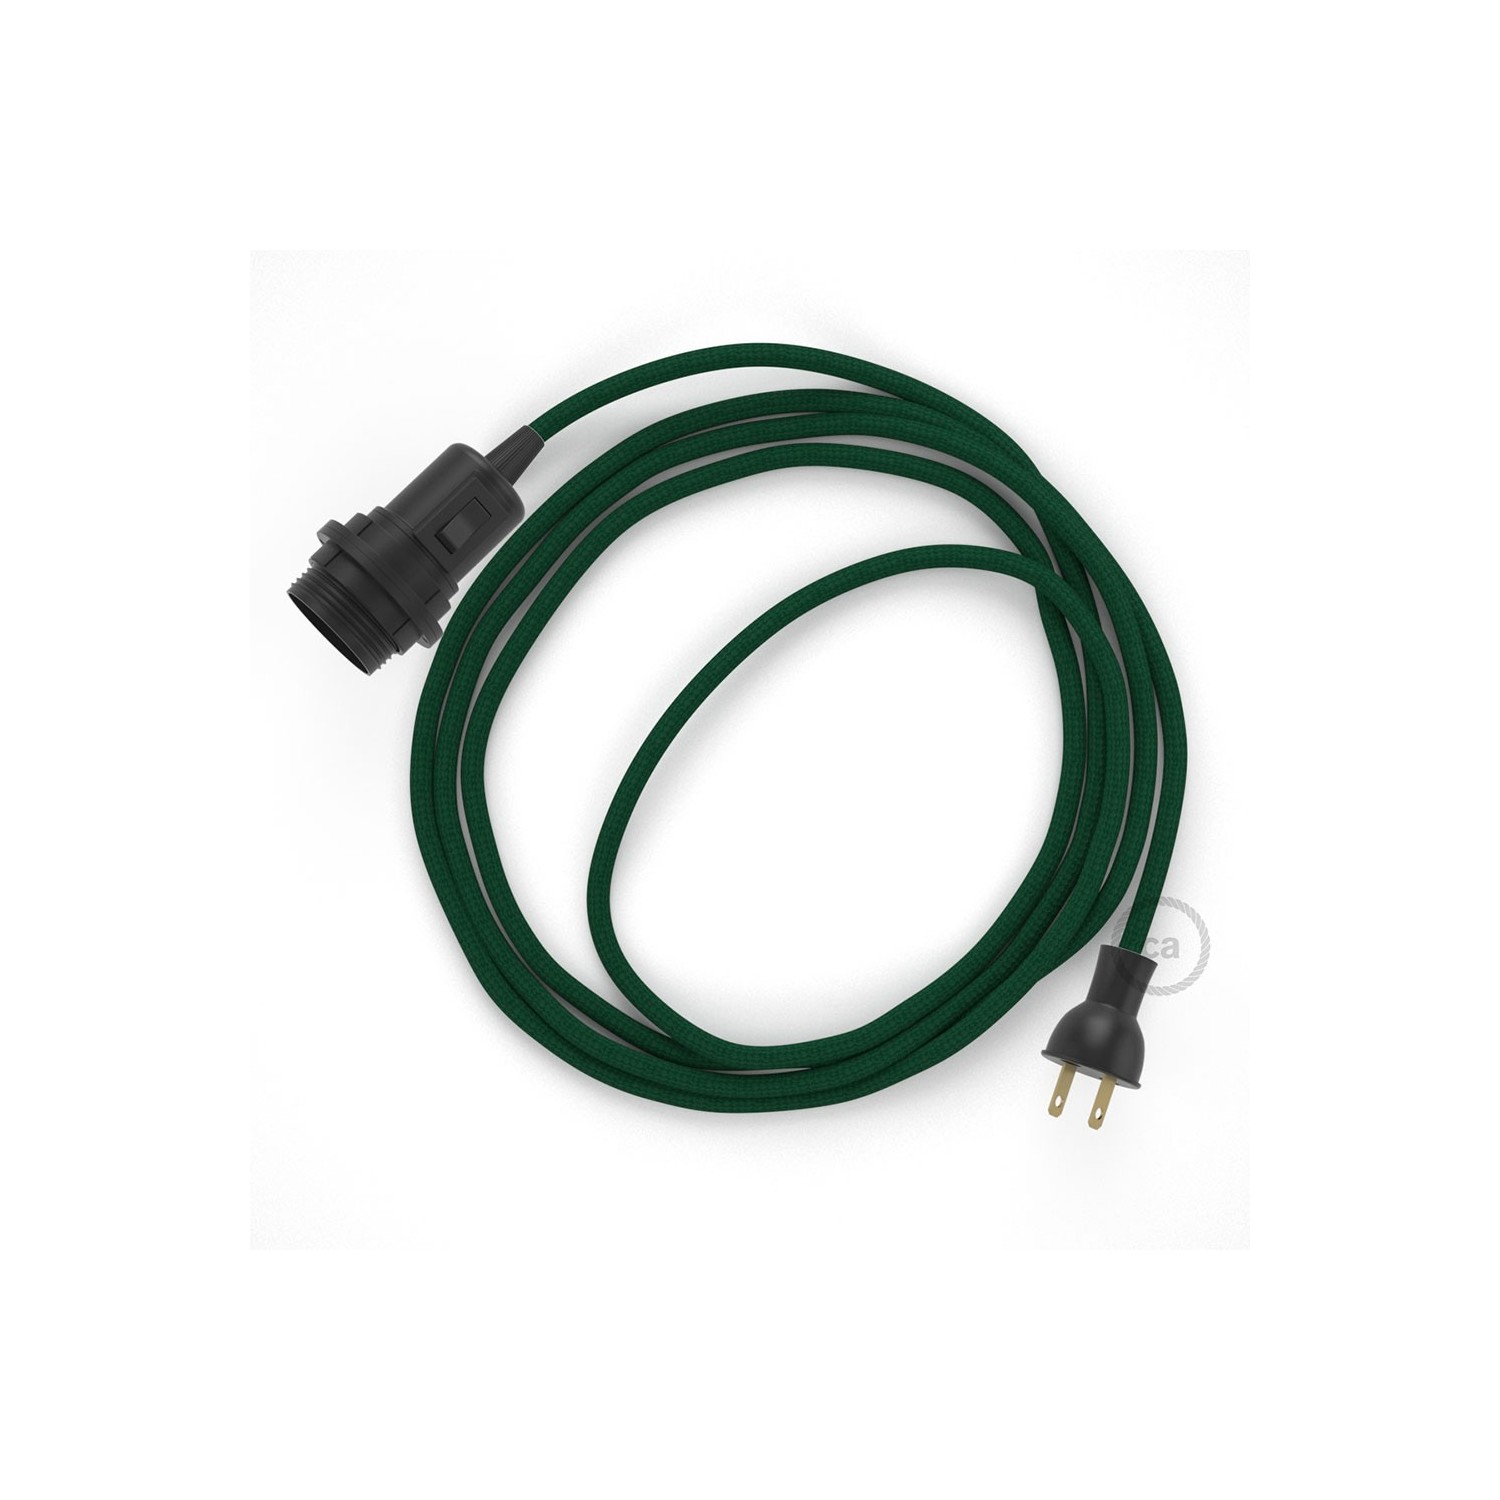 Crea tu Snake para pantalla con cable Brillante Verde RL06, socket y  enchufe, y trae la luz donde tu quieras.